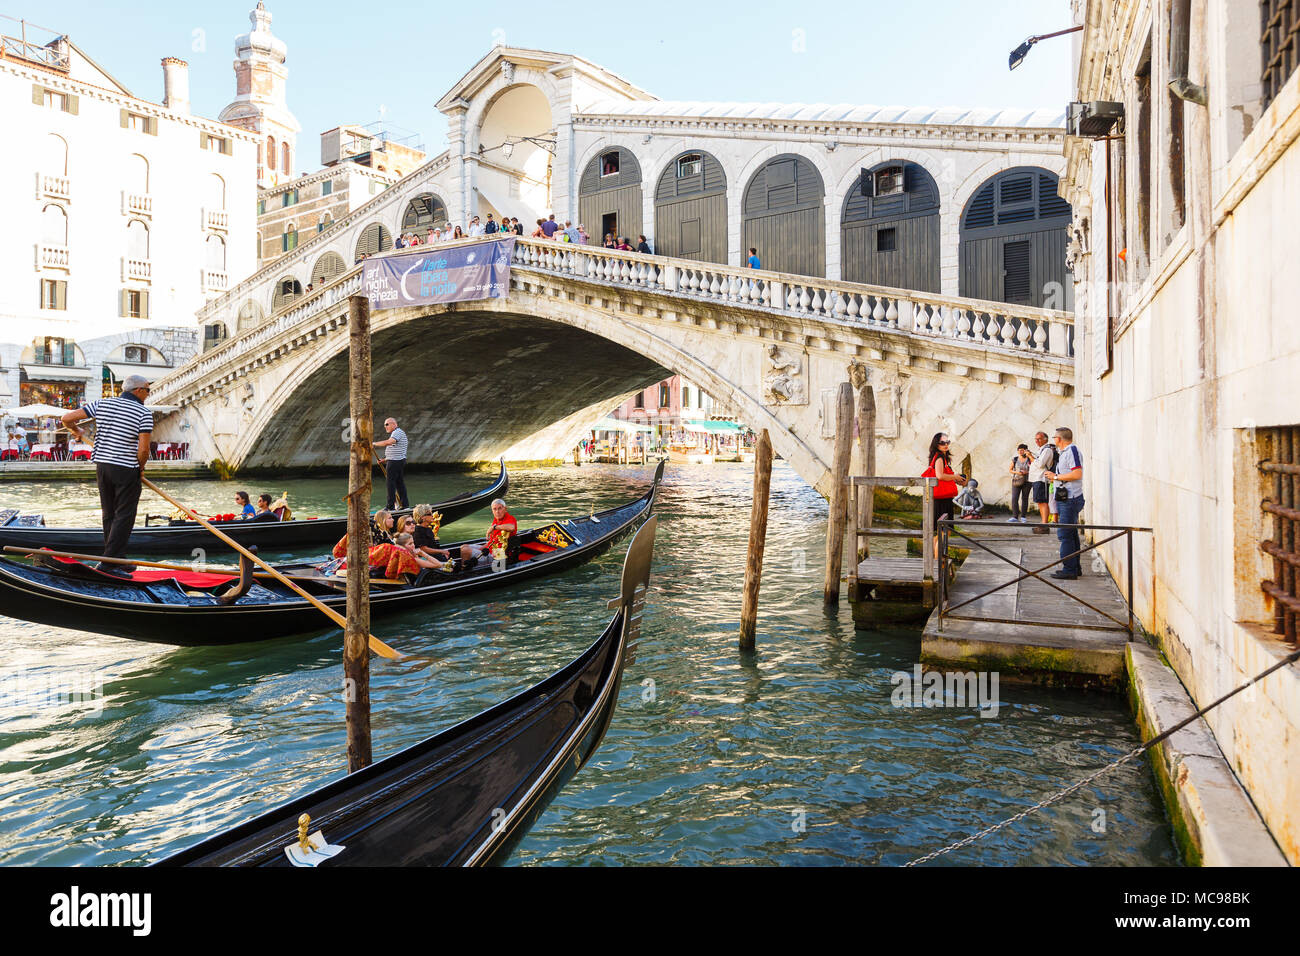 Venezia, Italia - Giugno, 21, 2013: Vista di gondole con passenges e il Ponte di Rialto, molti turisti su un ponte, , openair ristorante con ombrelloni su Foto Stock